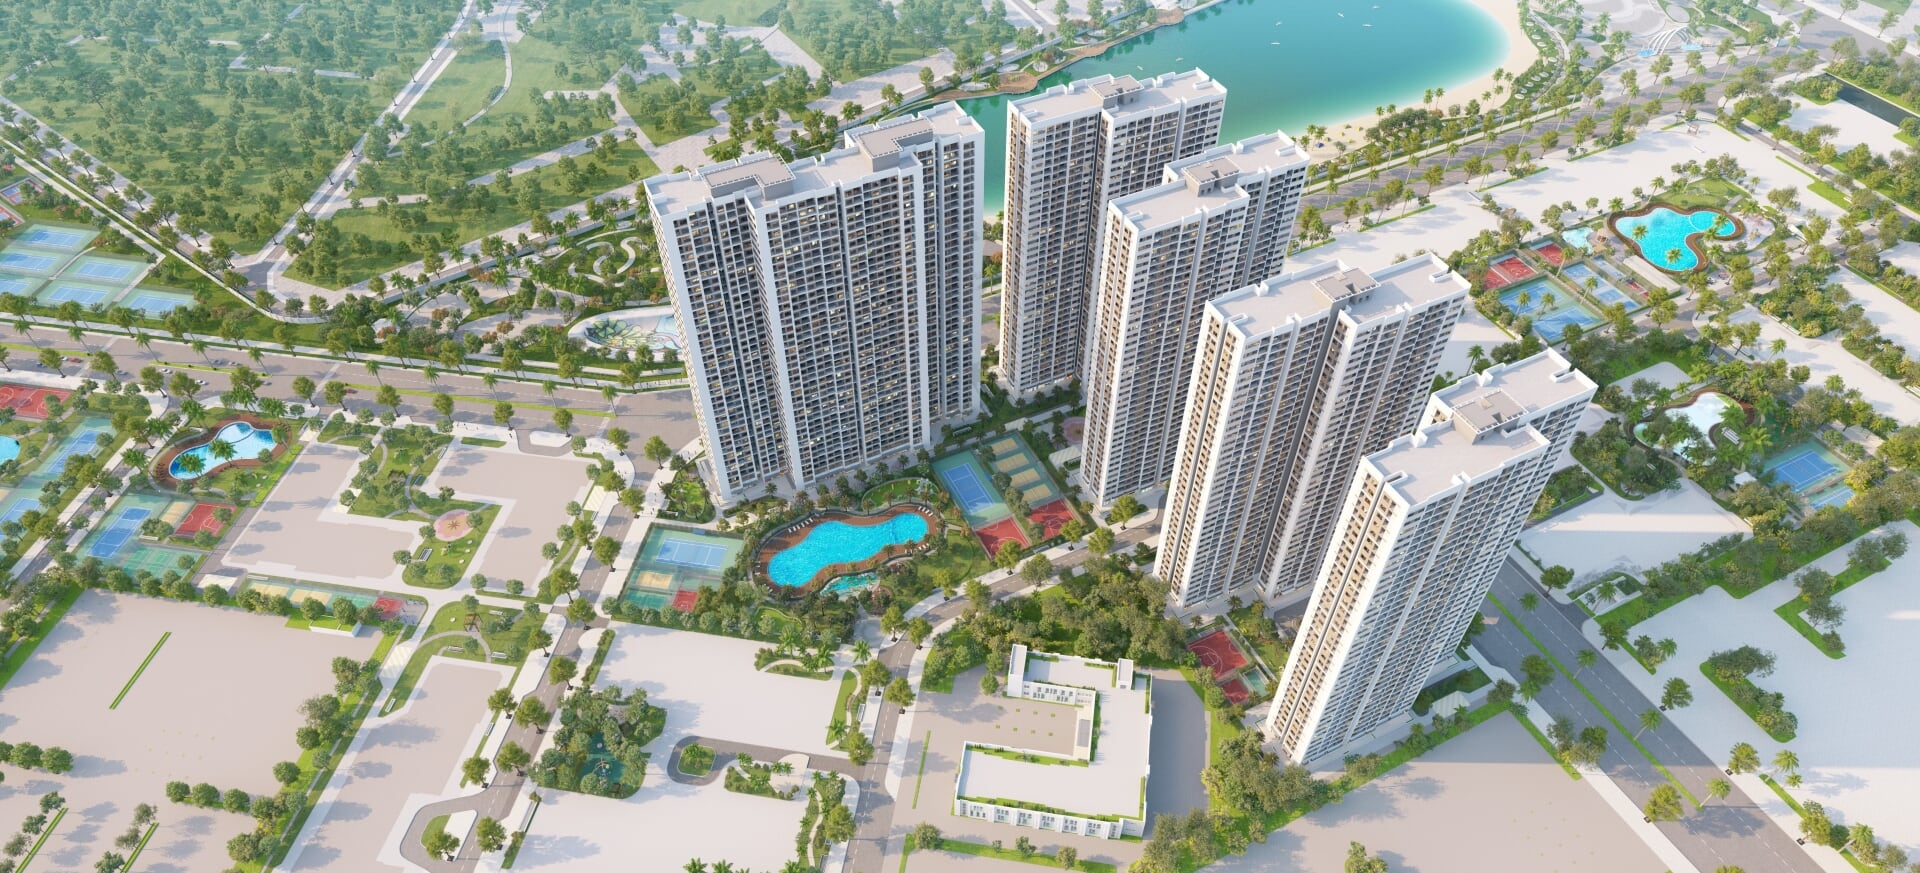 MIKGroup và Vinhomes hứa hẹn tạo nên nhiều đột phá cho bất động sản phía Tây Hà Nội